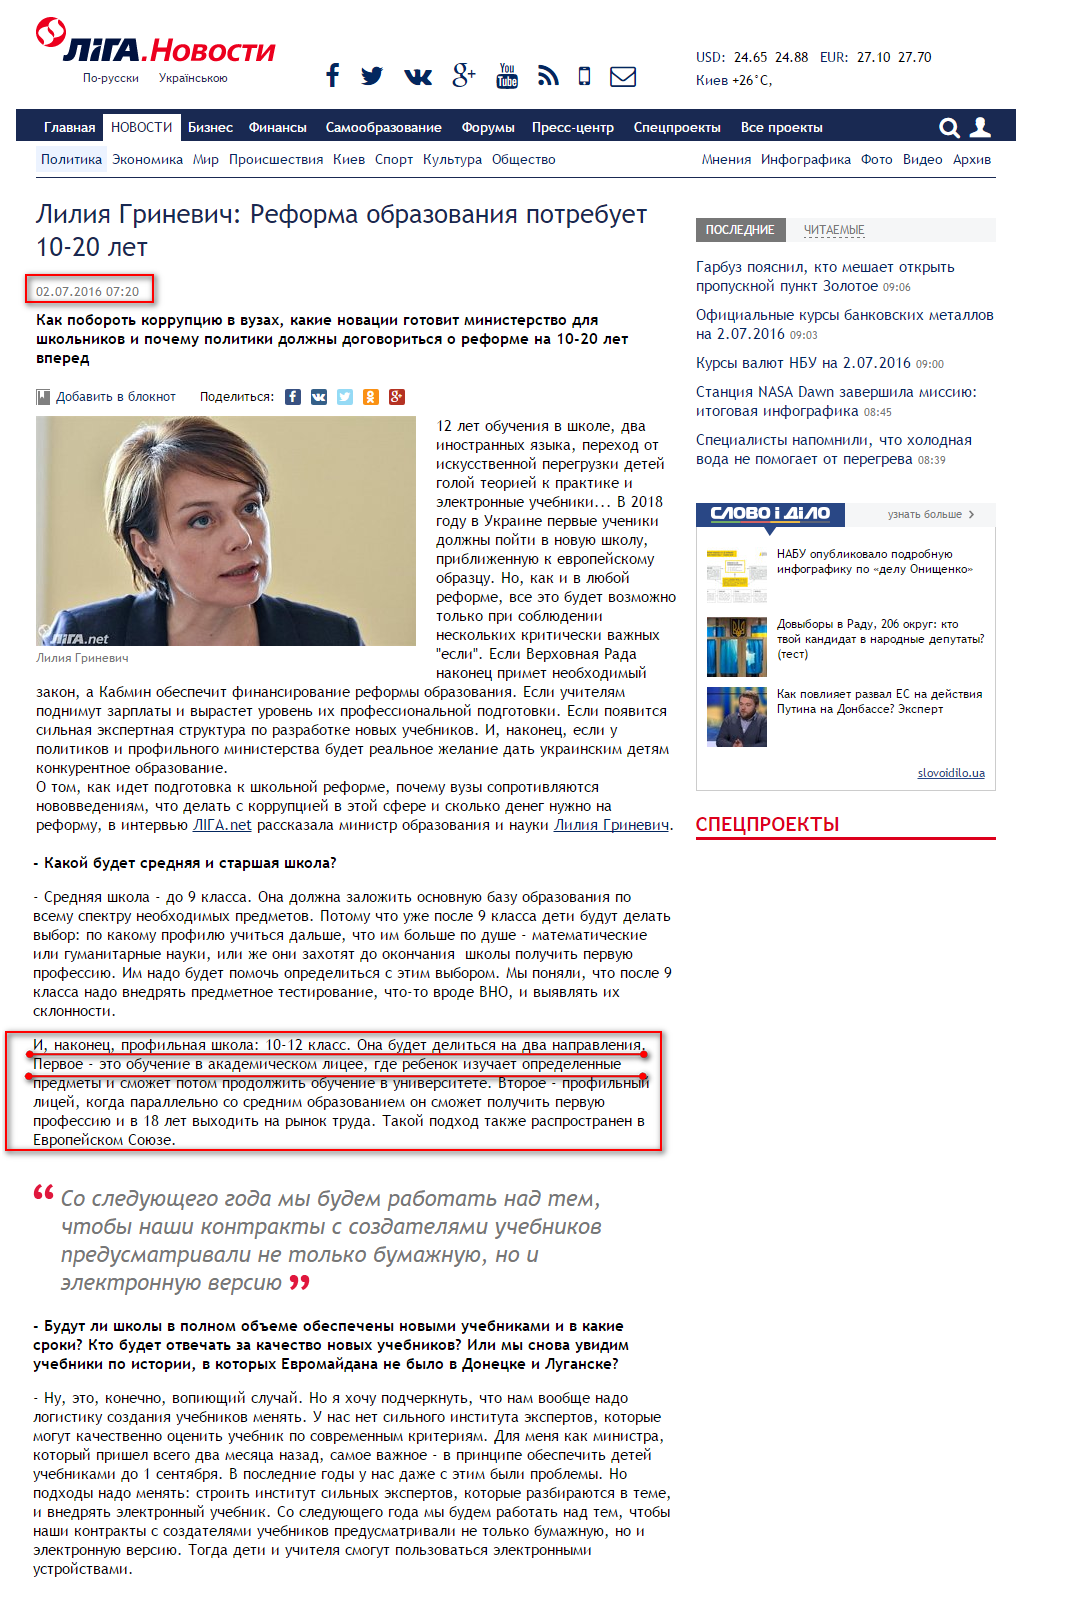 http://news.liga.net/interview/politics/11471129-liliya_grinevich_reforma_obrazovaniya_potrebuet_10_20_let.htm